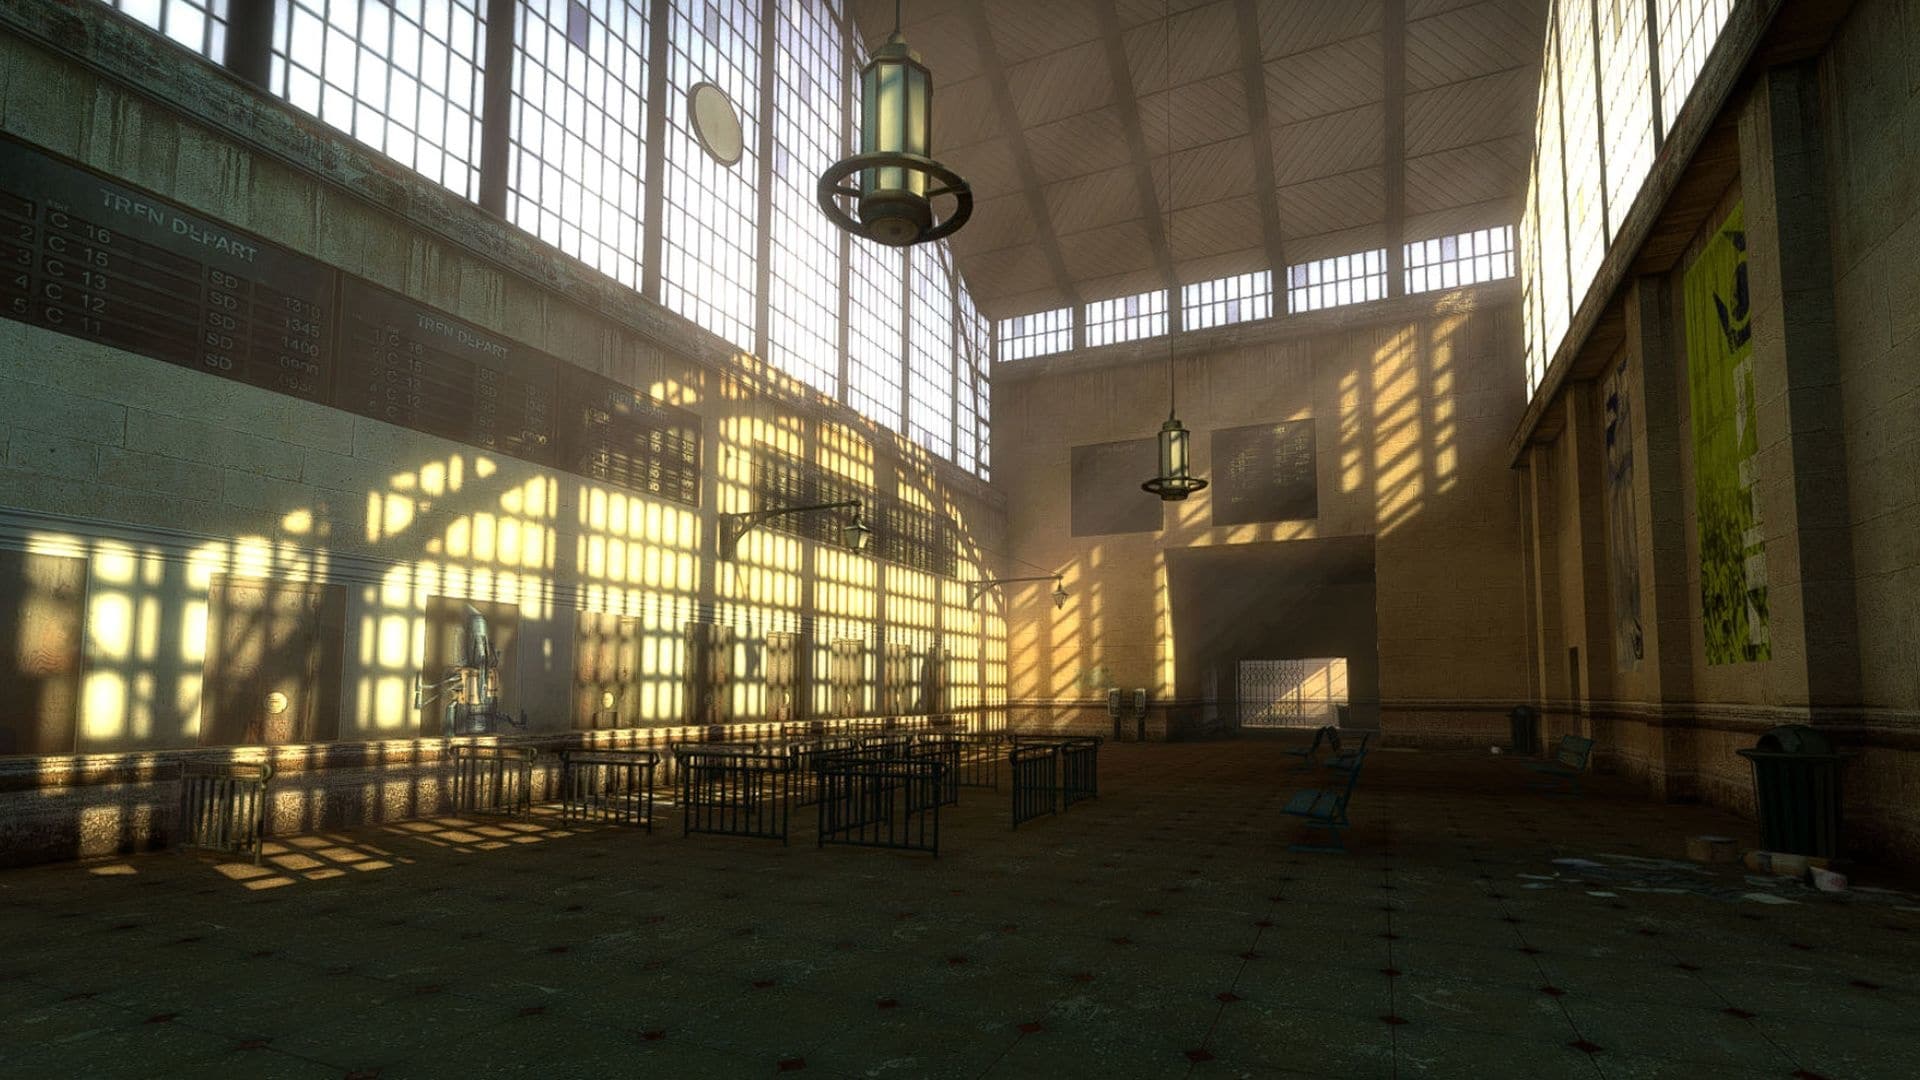 (На будущее команда мода обещала обновление графики в дополнение к реализации эпизодов Half-Life, что должно оптимизировать текстуры и несколько устаревшее освещение игры, среди прочего.)